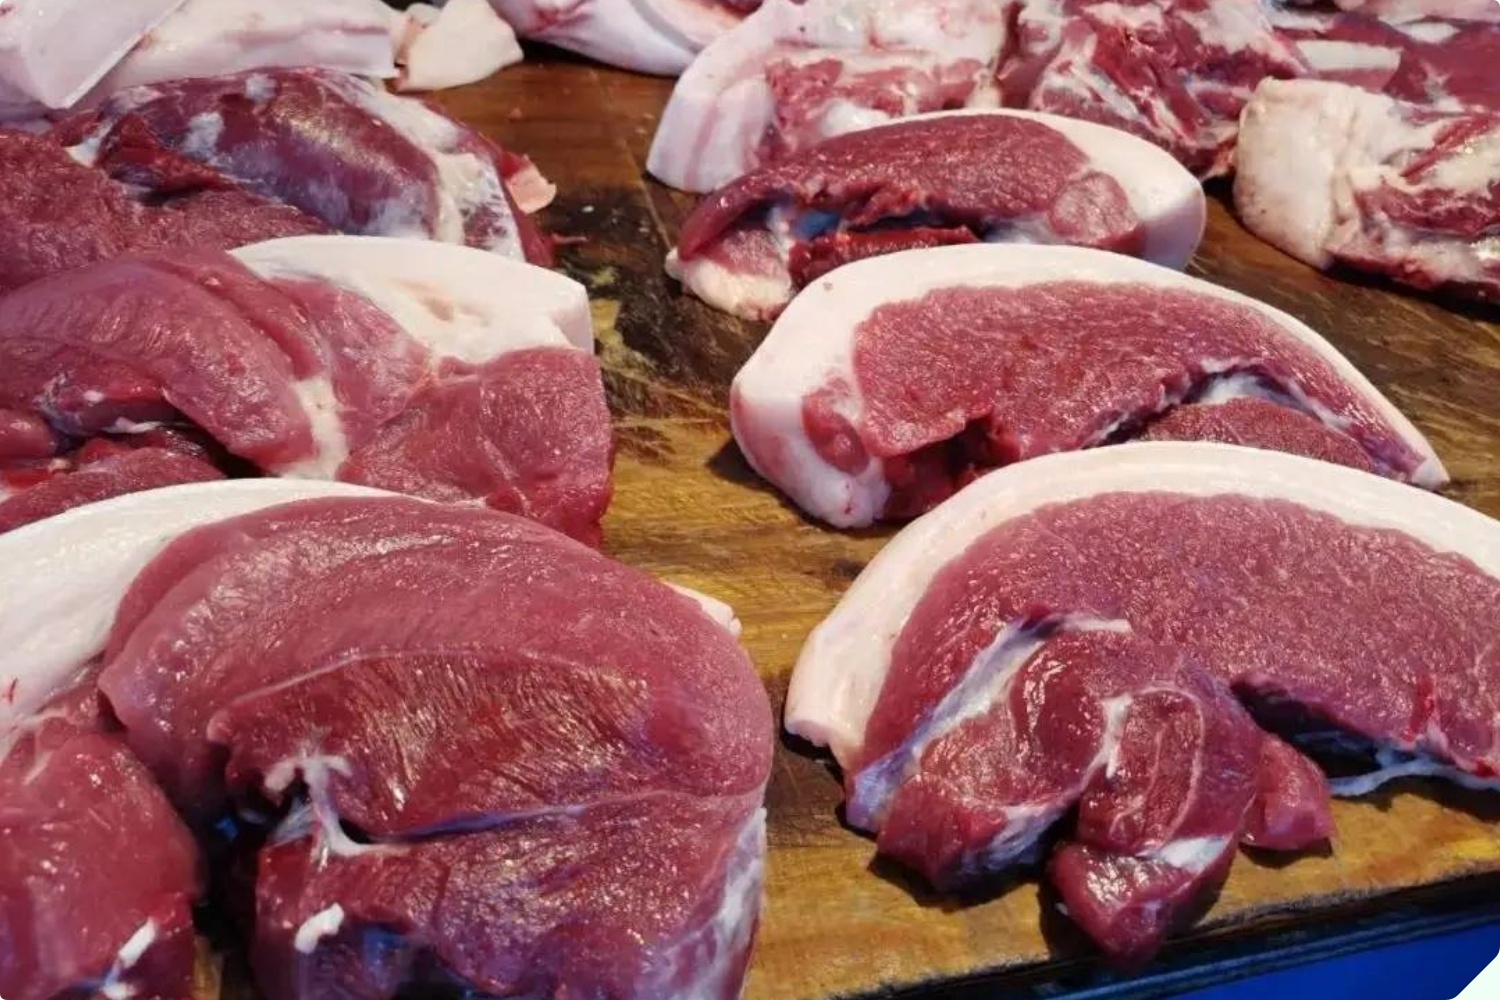 Mua thịt lợn nên chọn miếng sẫm hay nhạt màu? Cứ nhìn kỹ 3 điểm, người bán thịt tài mấy cũng không lừa được bạn - 4